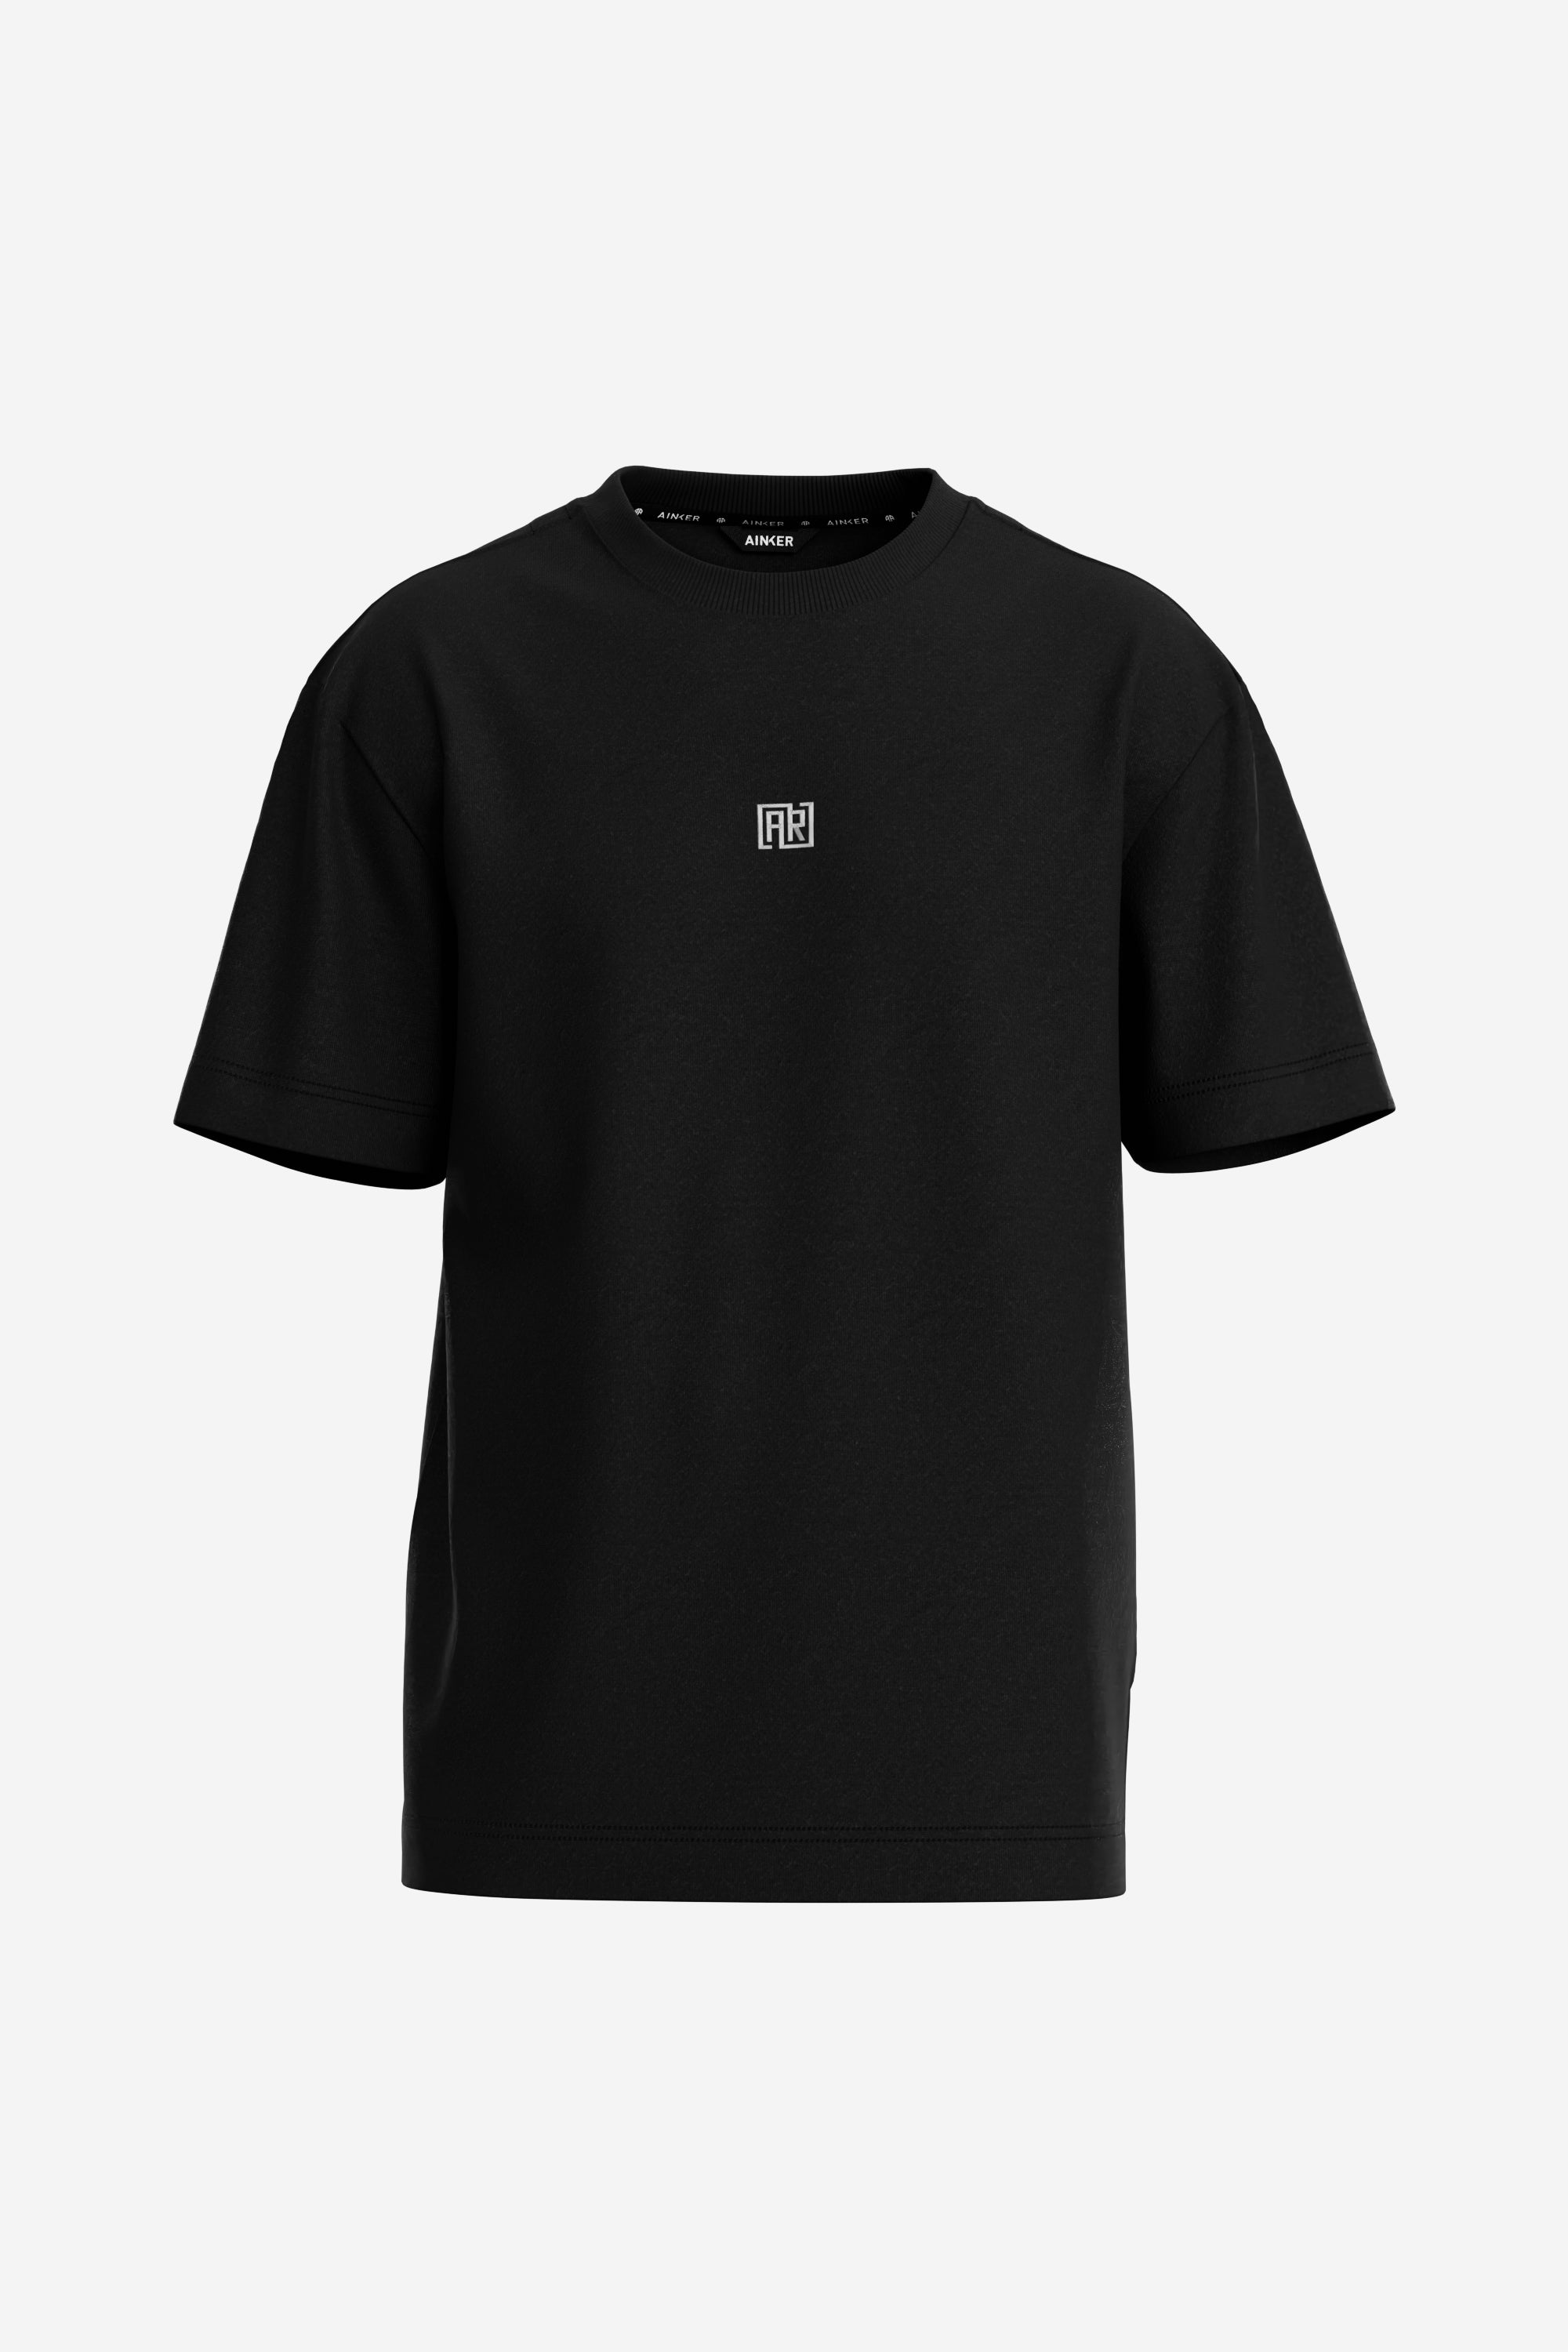 Square Black Mercerize T-Shirt